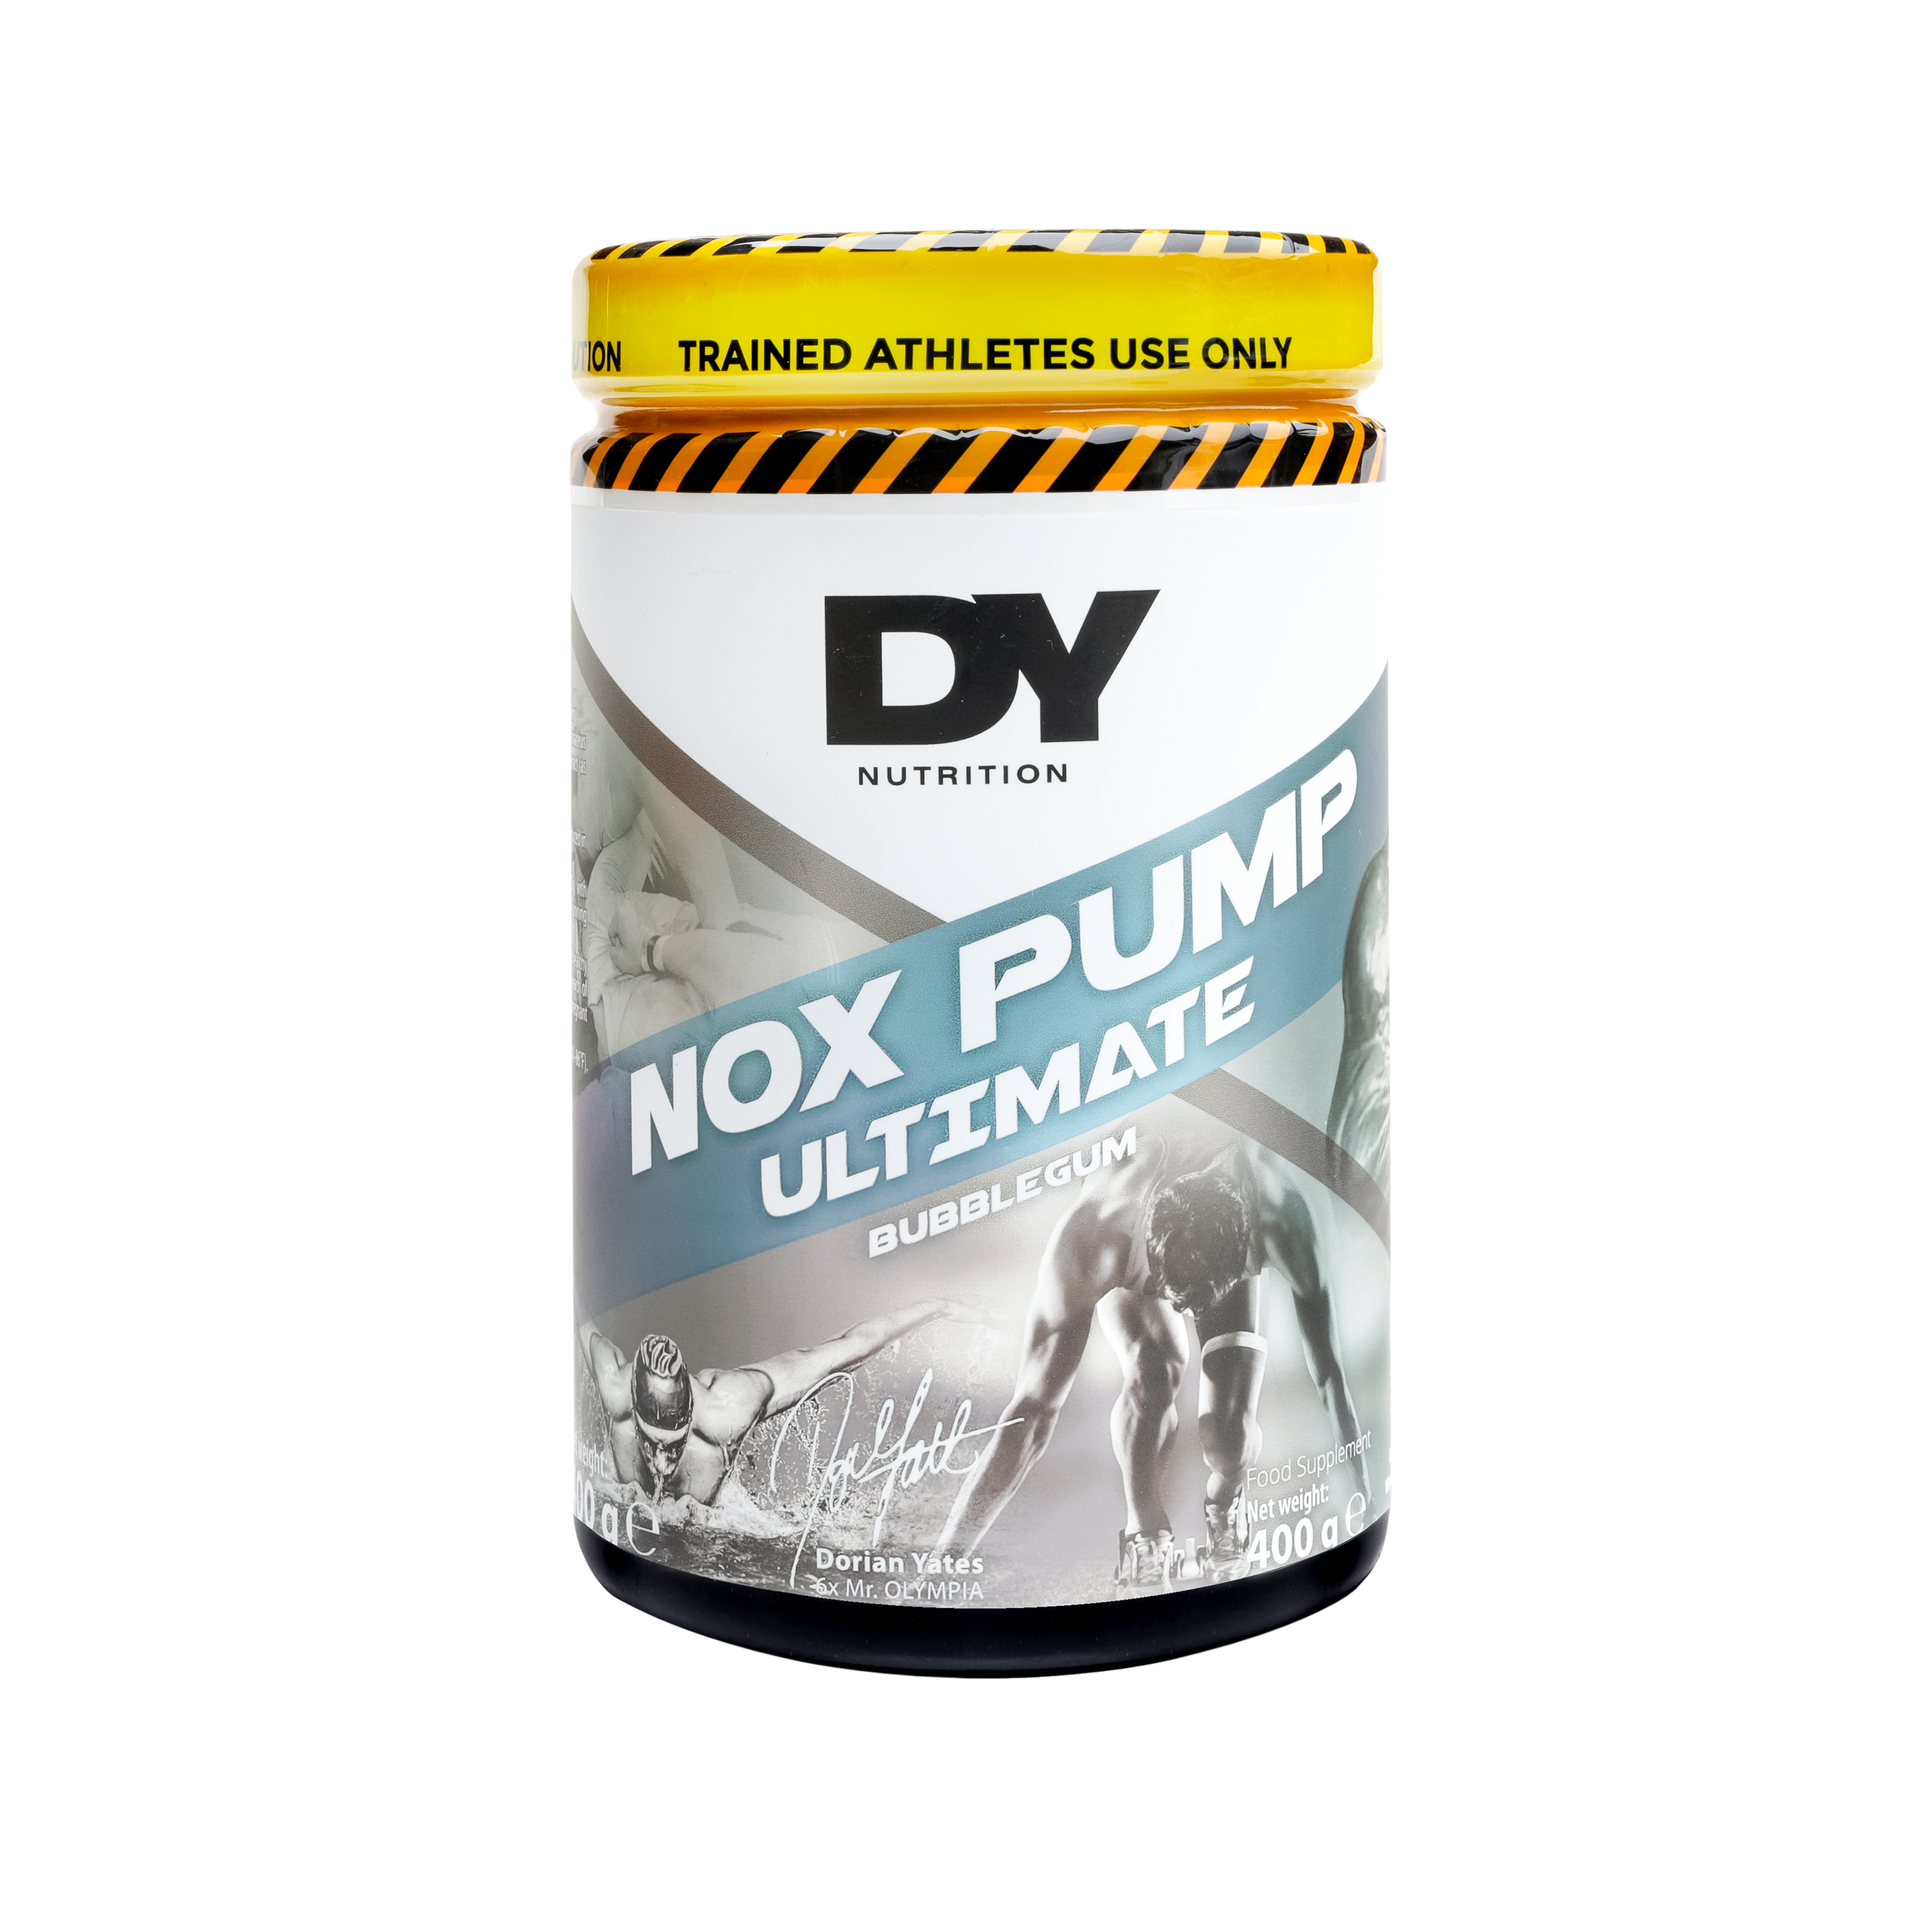 DY Nutrition Nox Pump 400g - Pre Workout